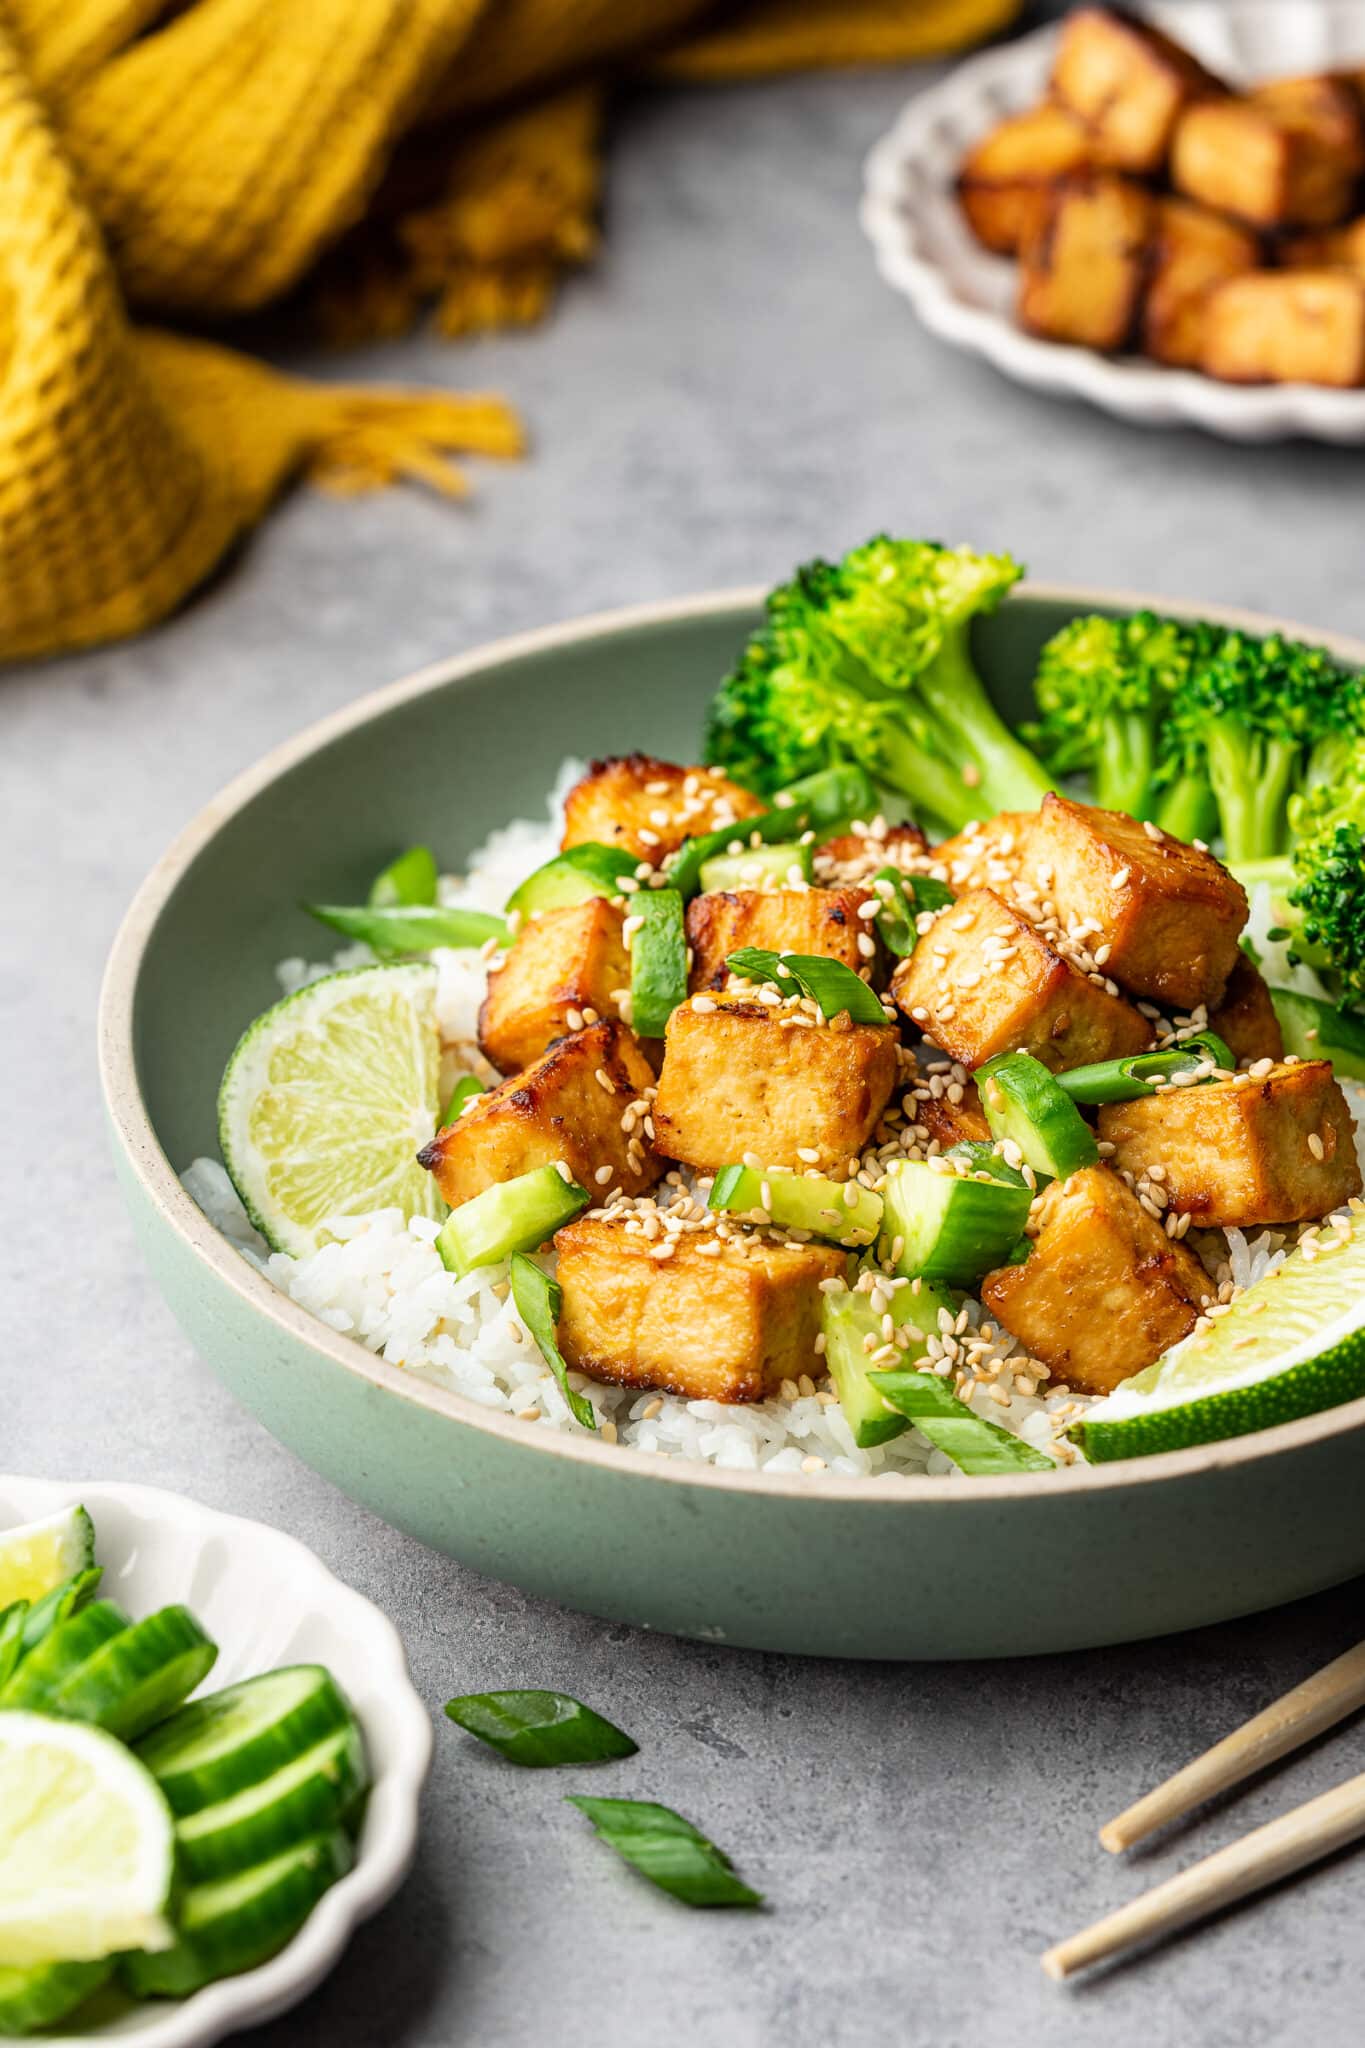 A vegan bowl of Asian tofu with broccoli.